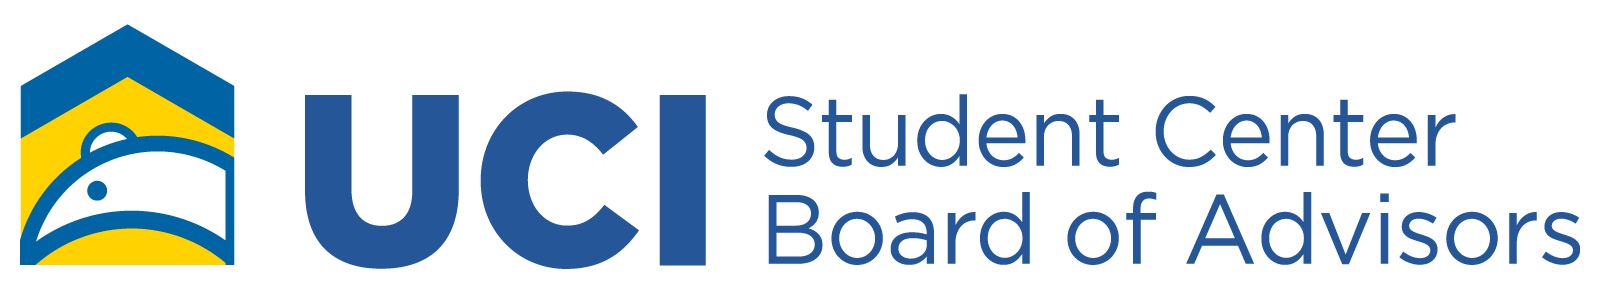 Student Center Board of Advisors